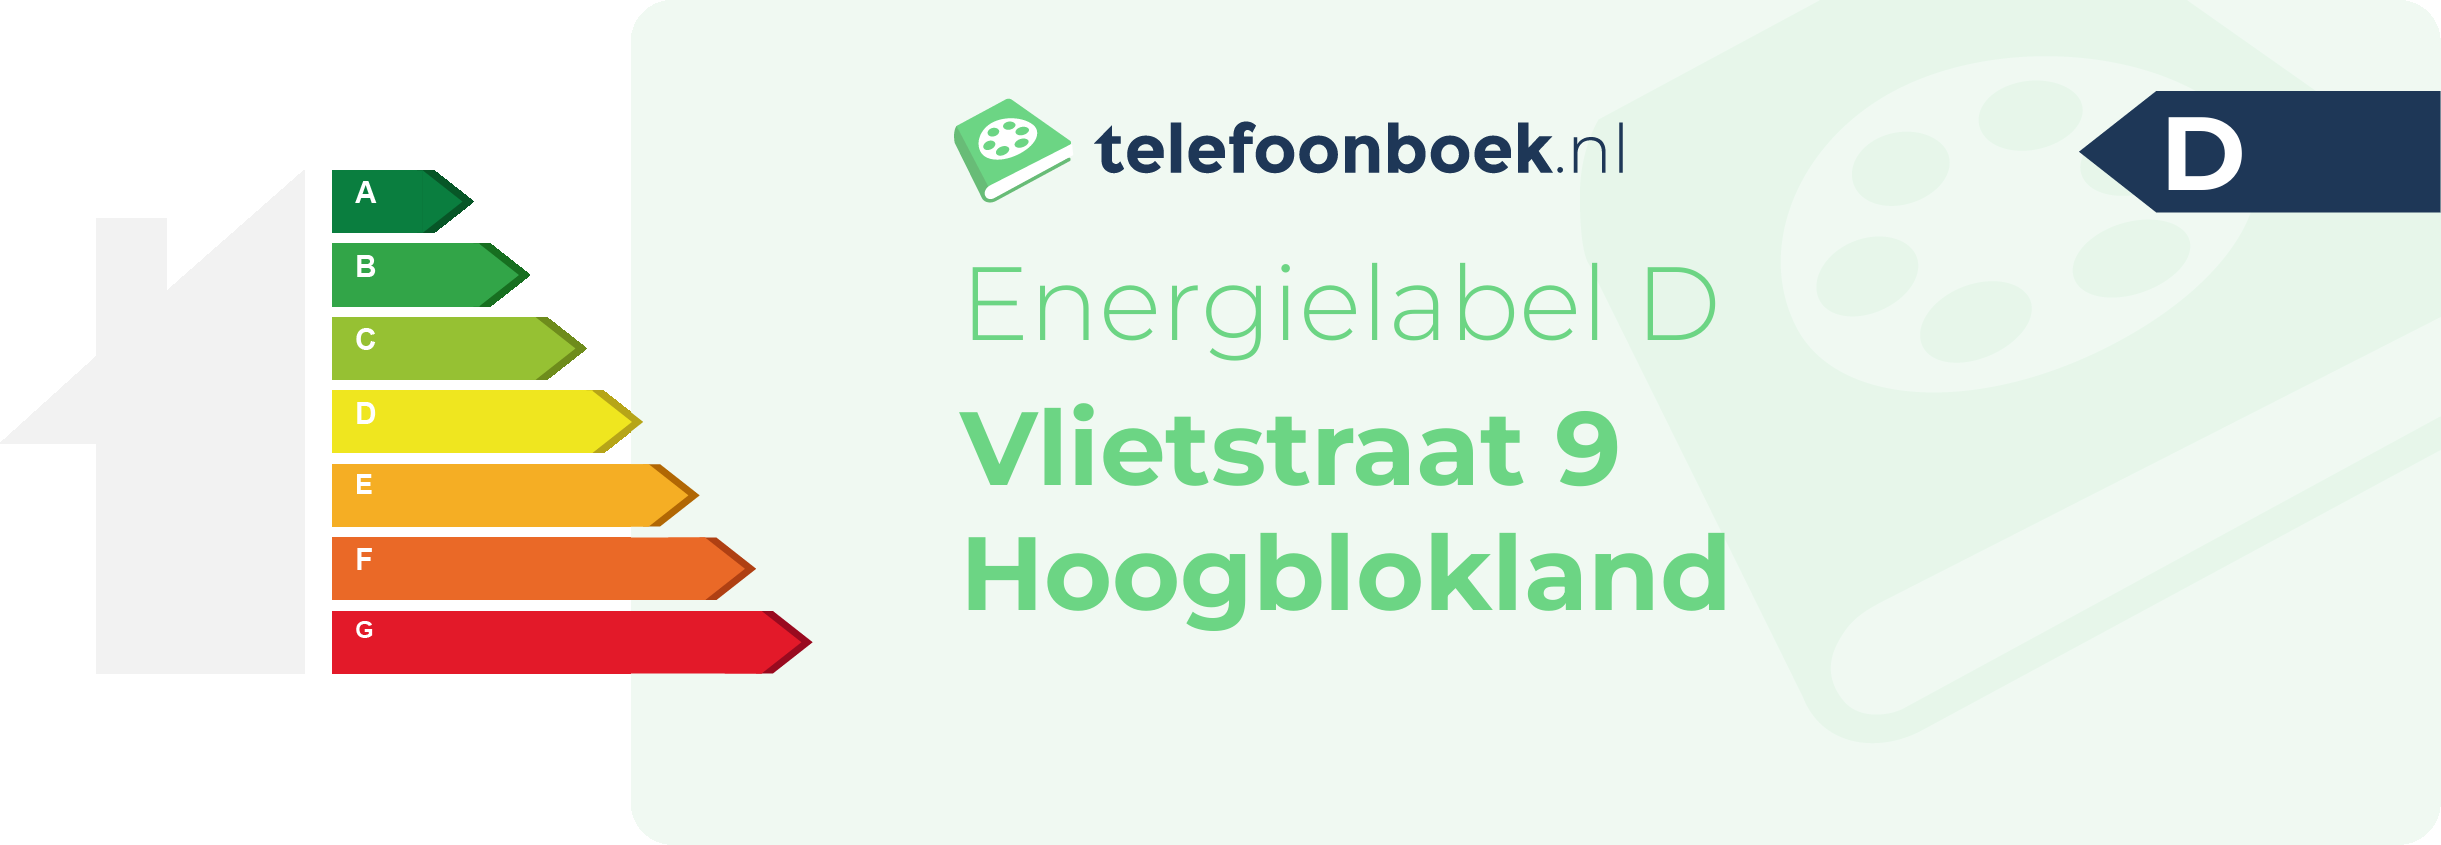 Energielabel Vlietstraat 9 Hoogblokland